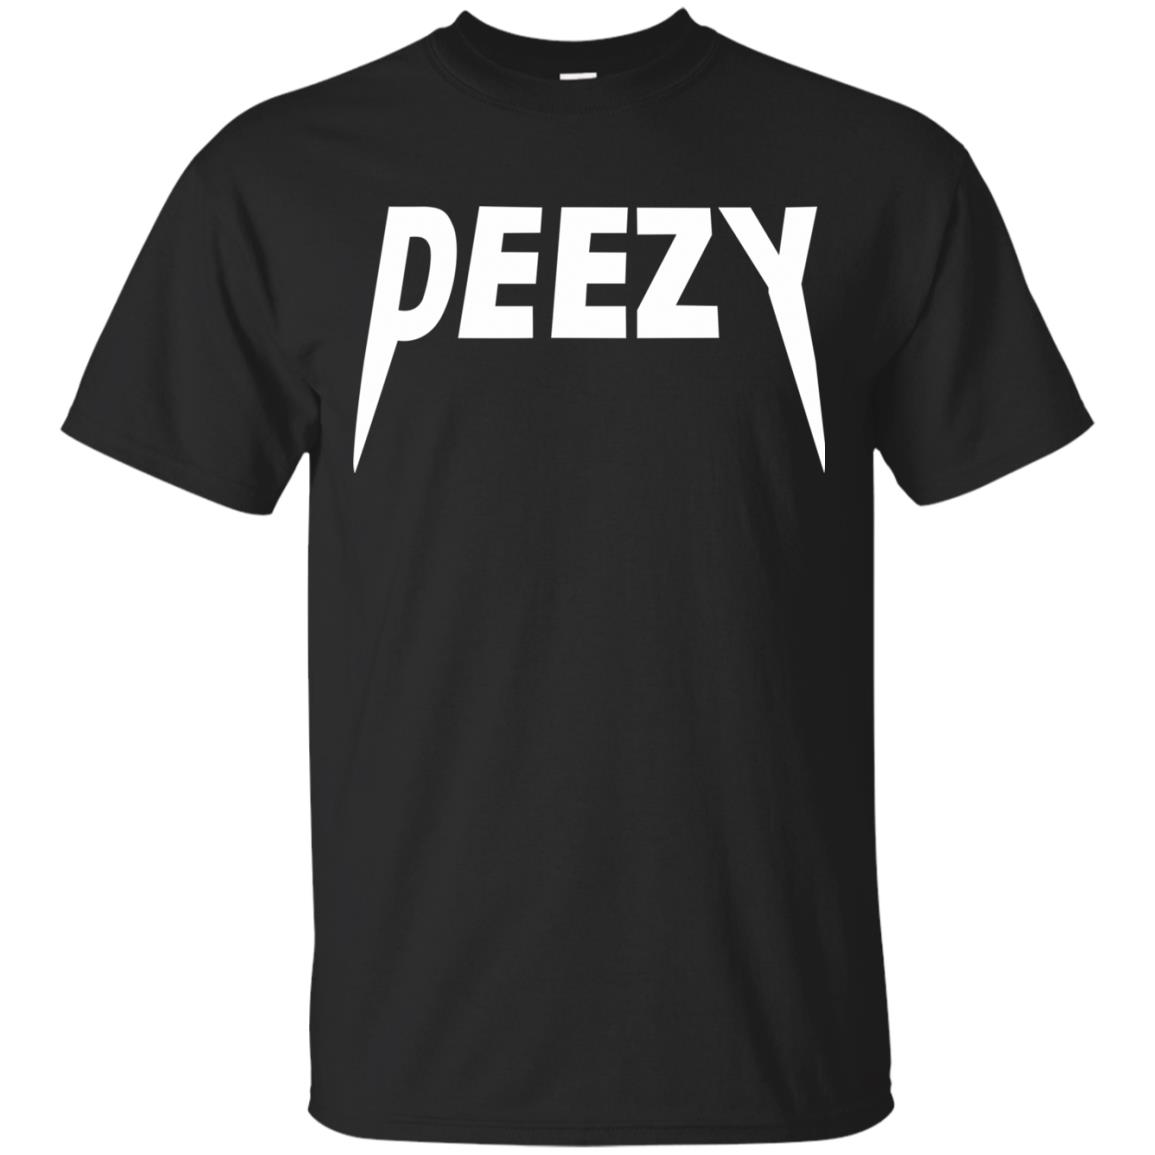 deezy shirt - black